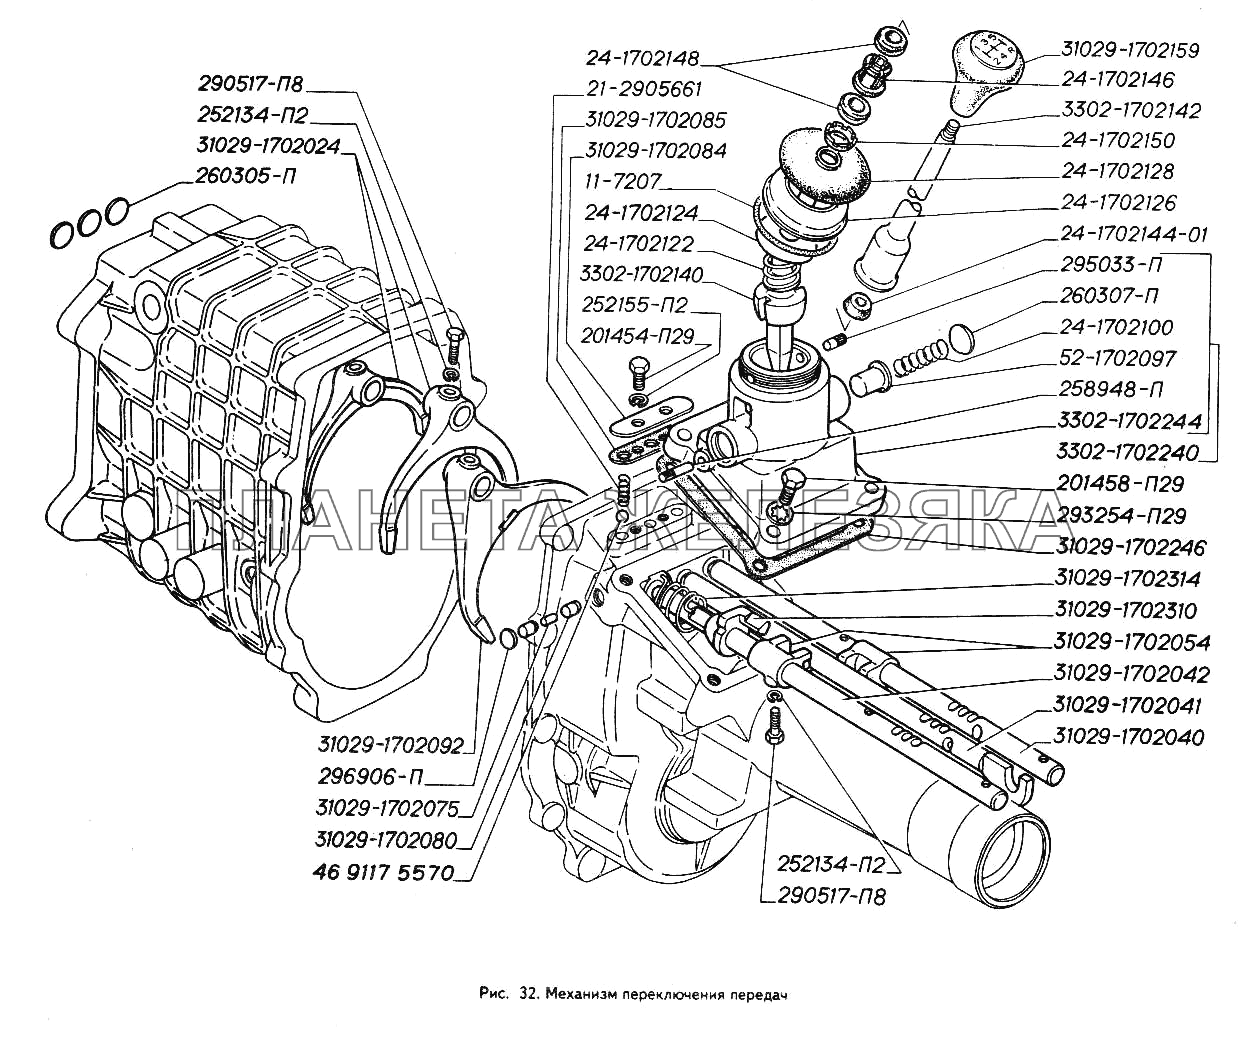 Механизм переключения передач ГАЗ-3302 (ГАЗель)